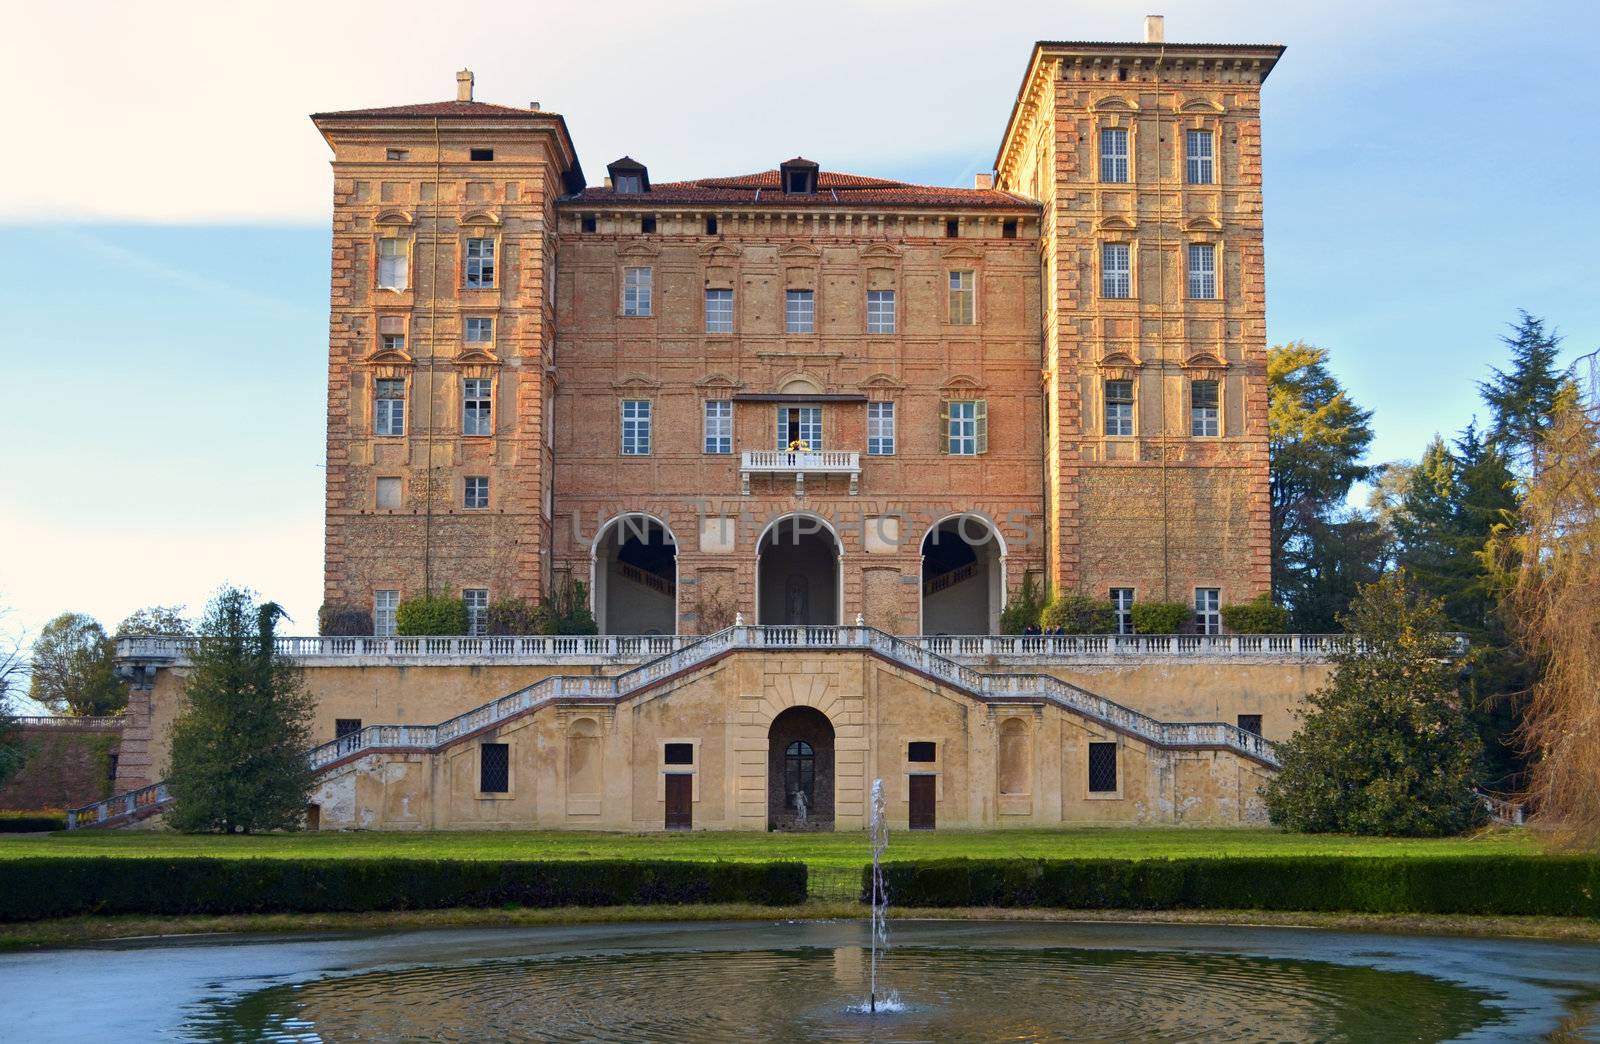 Duke's Castle in Agliè, Italy. Baroque palace